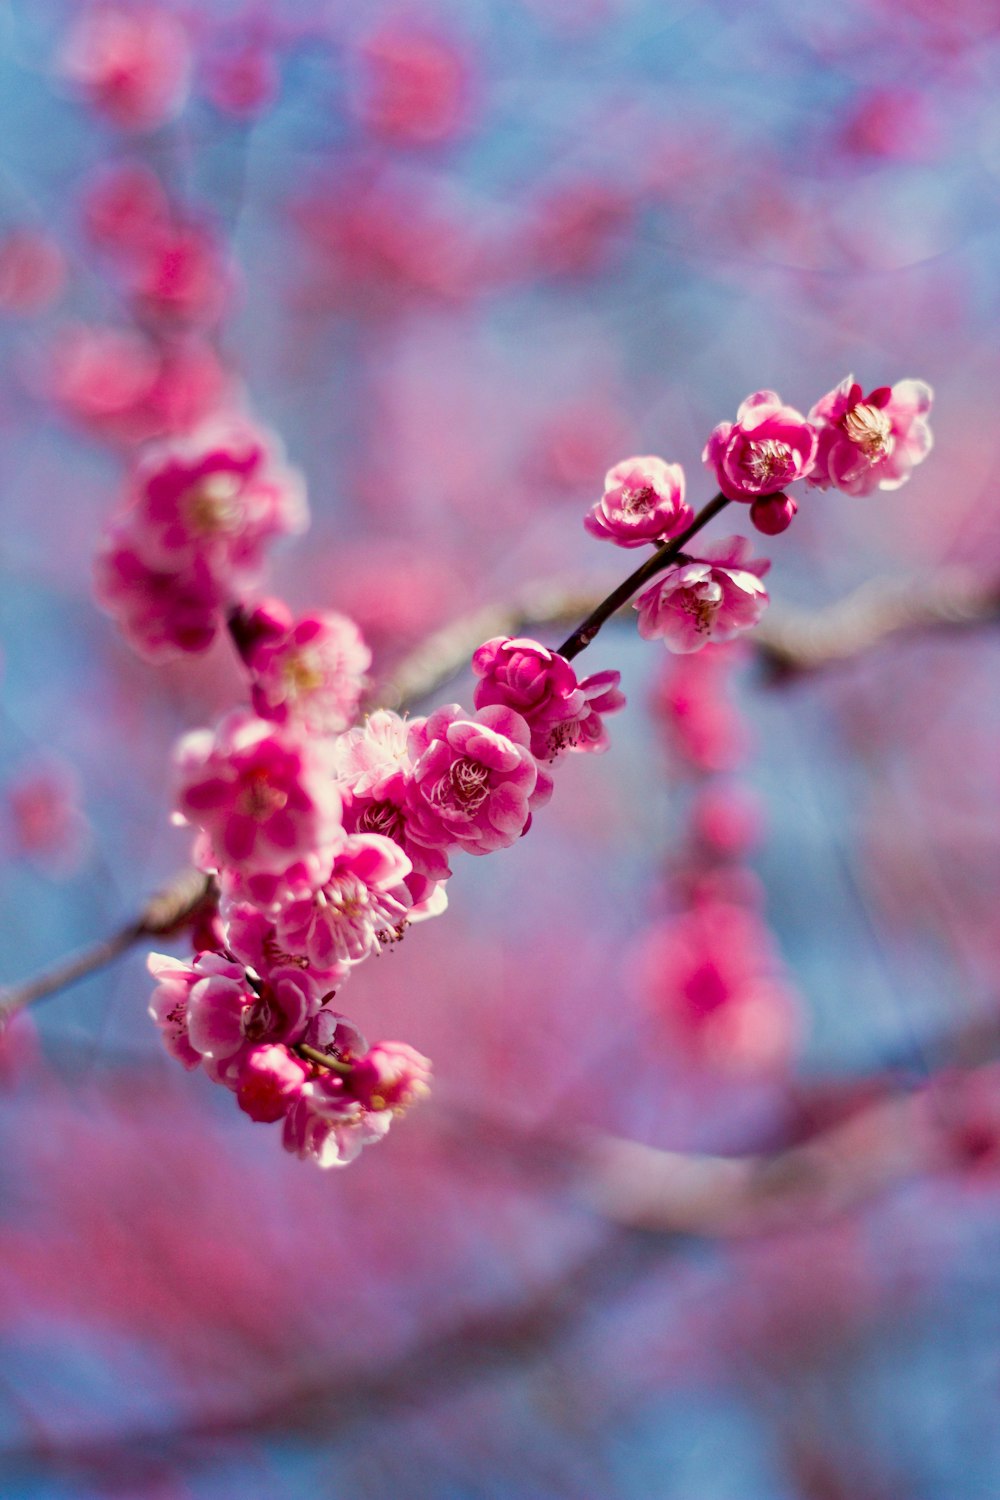 foto di messa a fuoco superficiale di fiori di ciliegio rosa